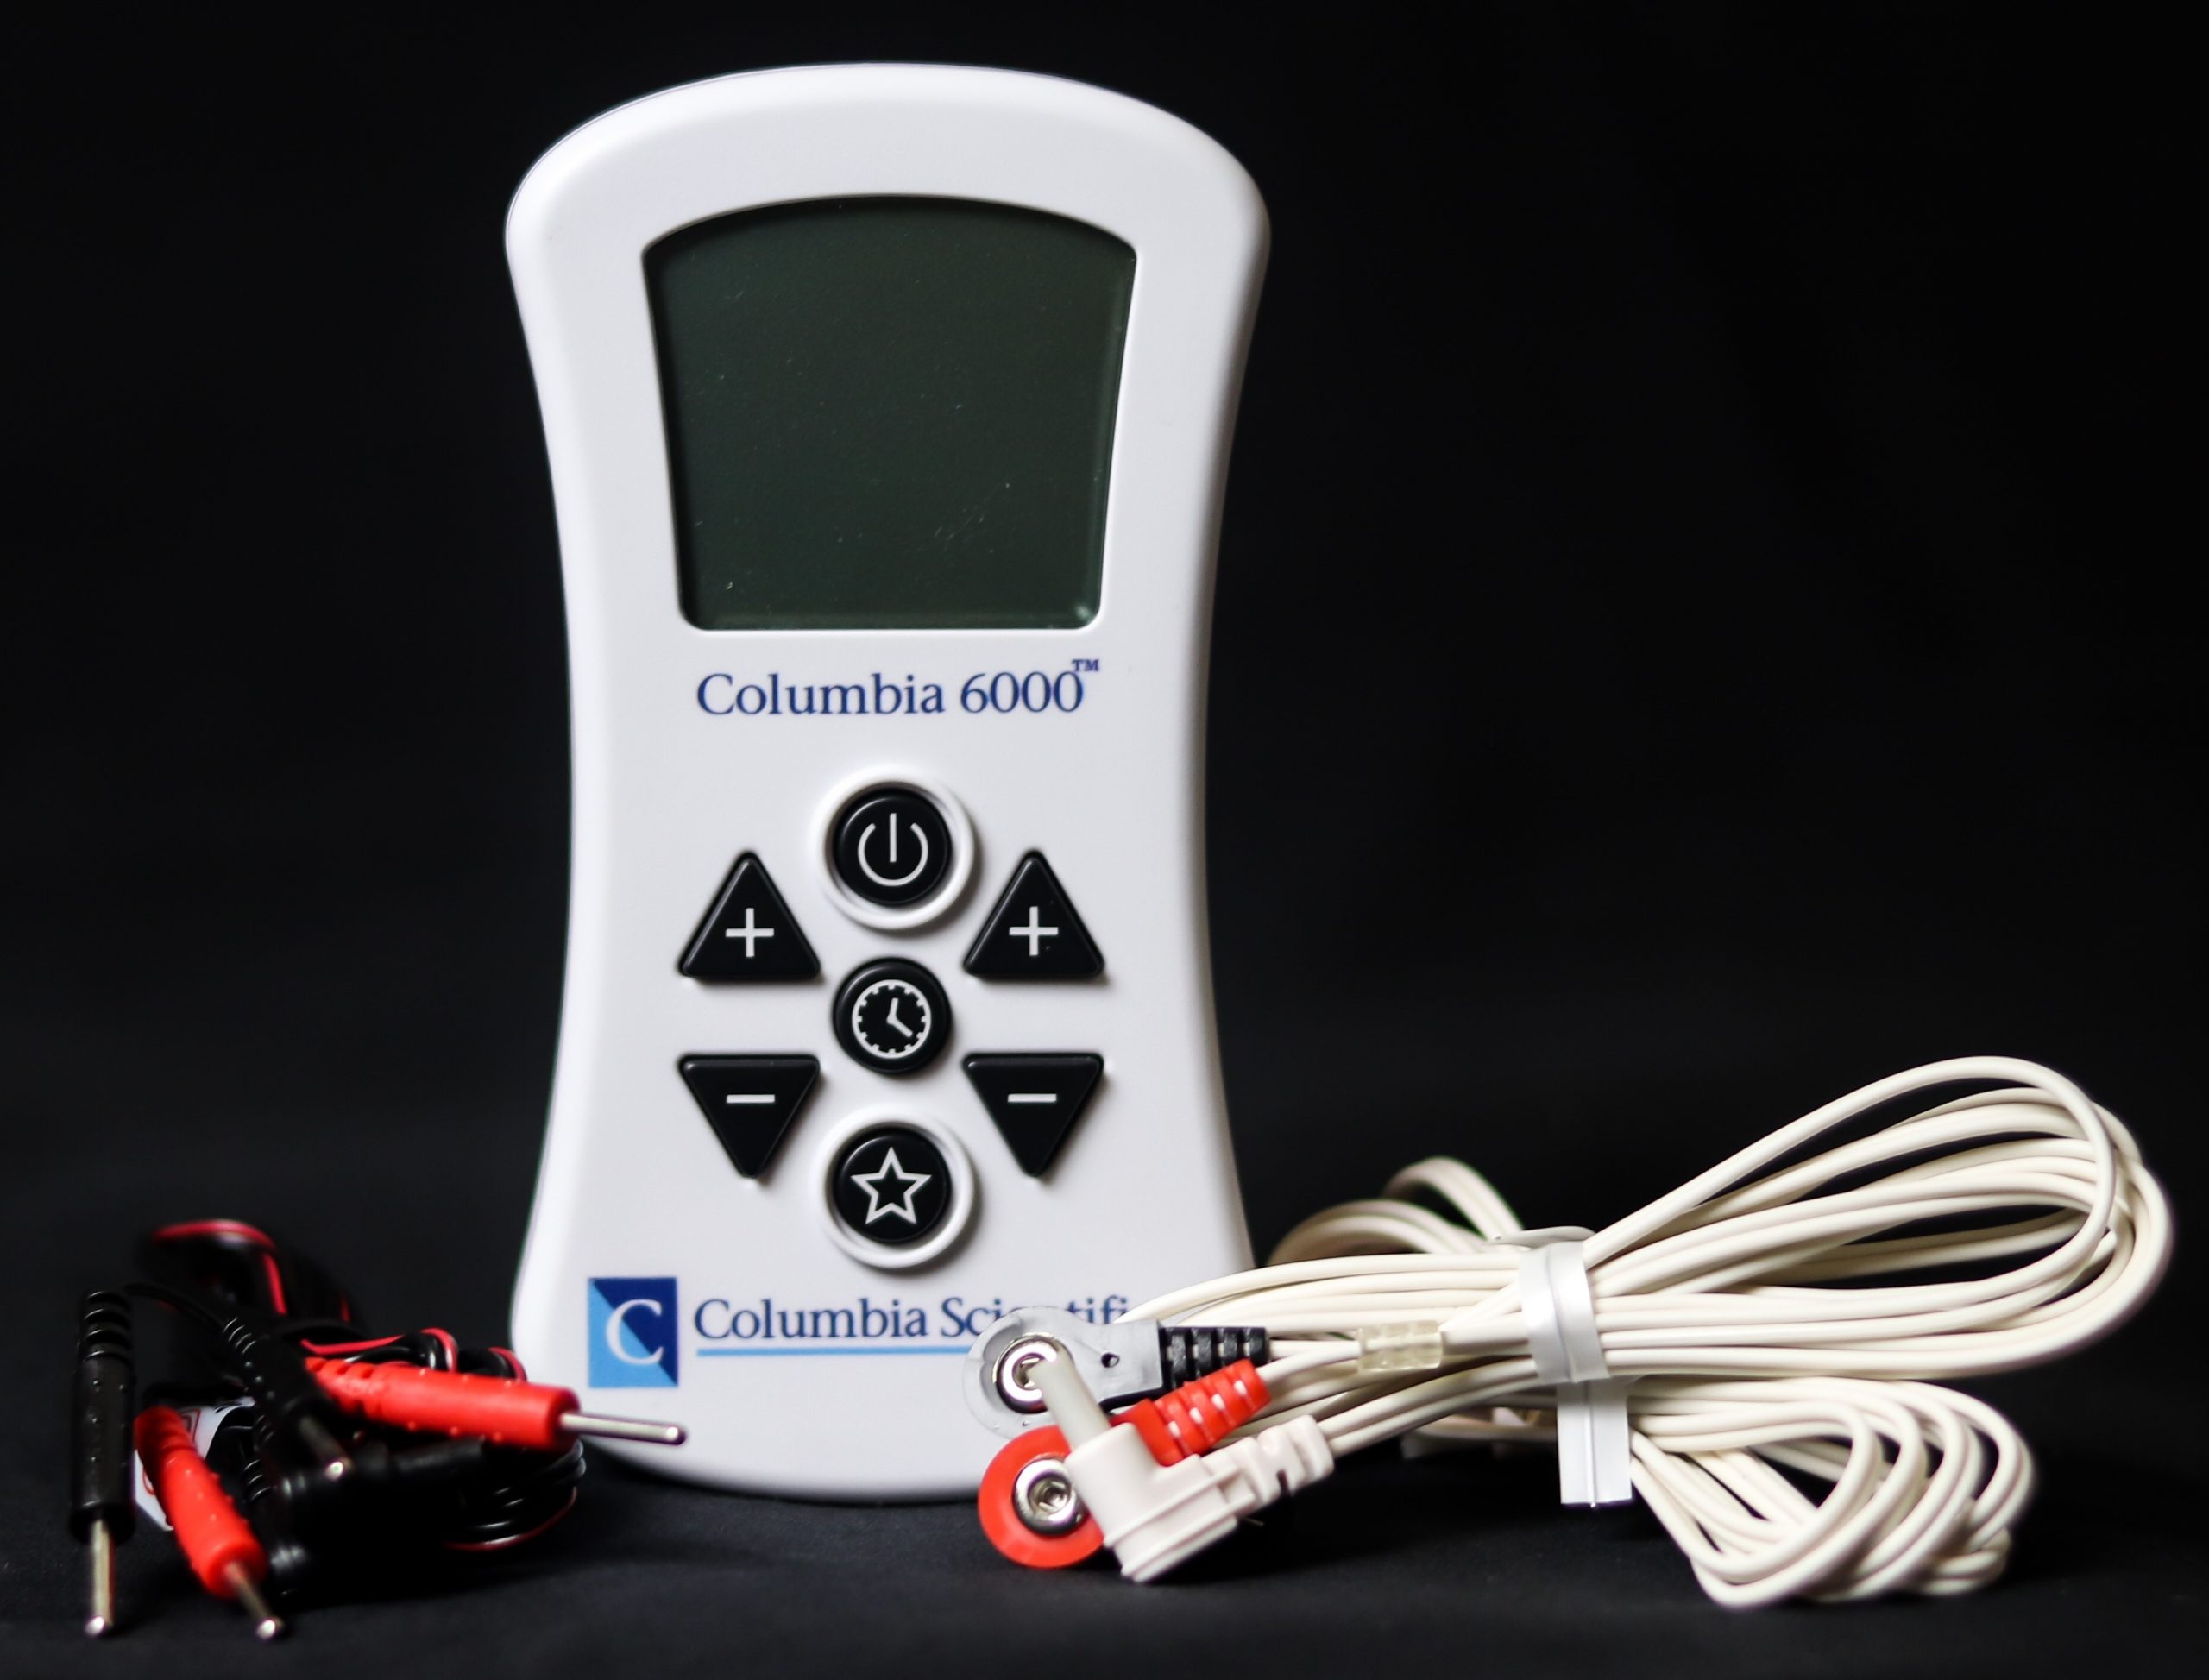 Columbia 6000 NMES Dysphagia device kit